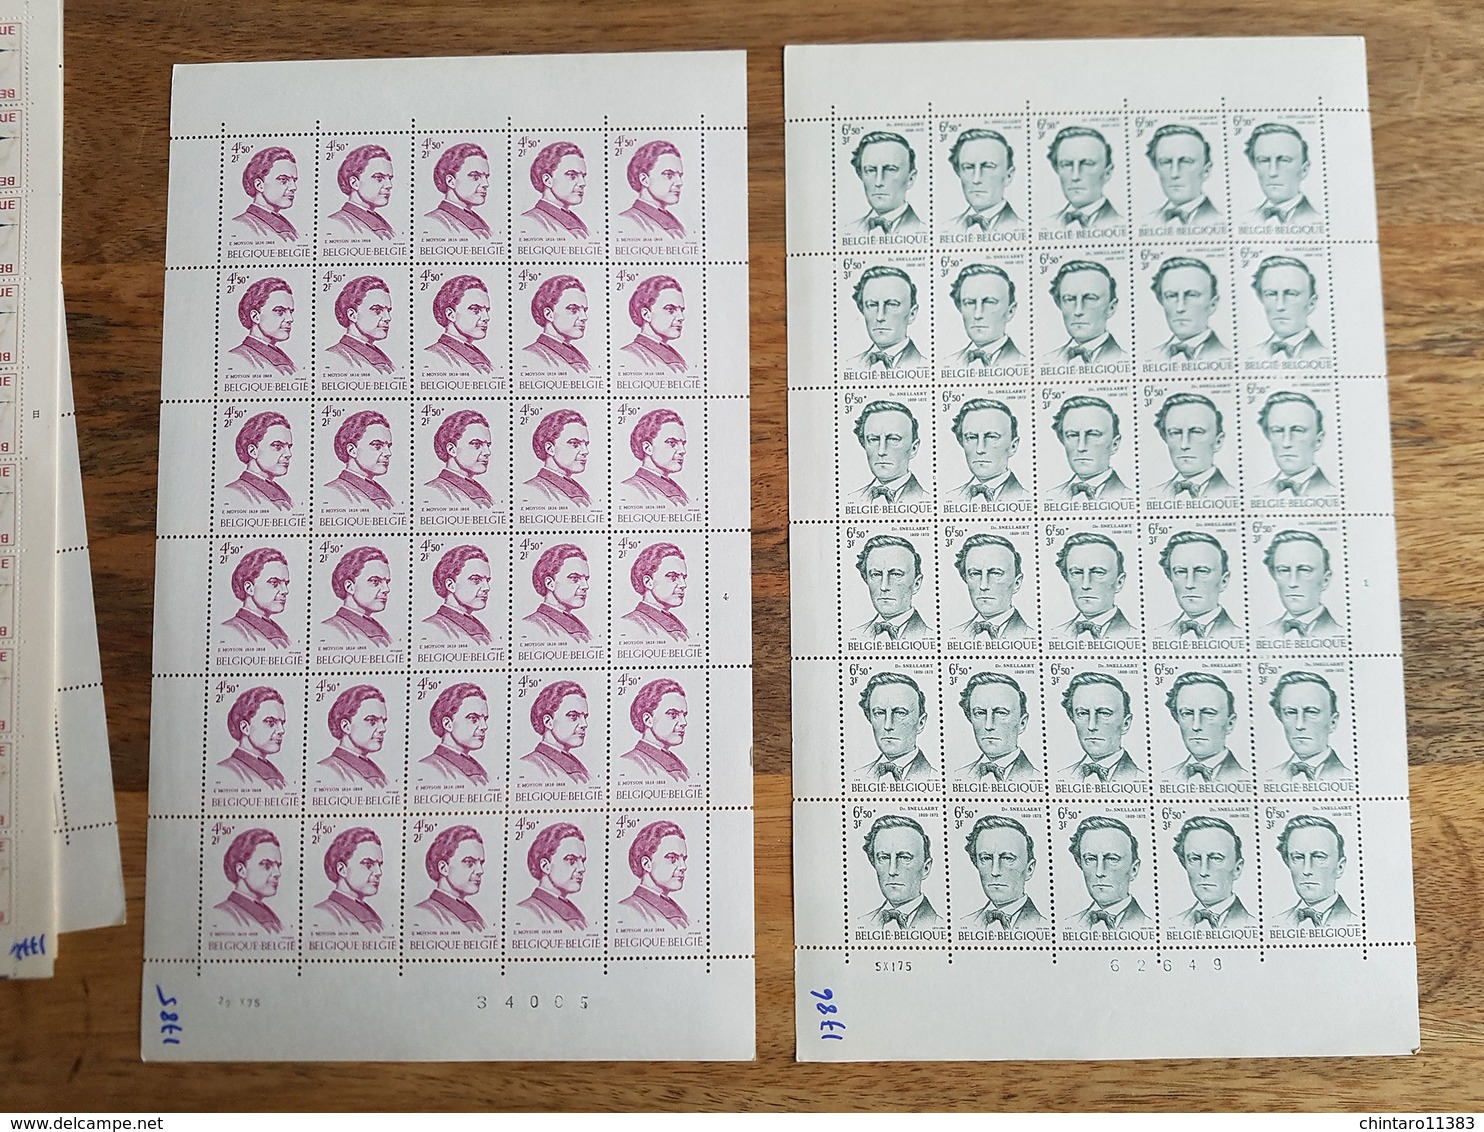 Lot feuilles complètes de timbres Belgique - Année 1975